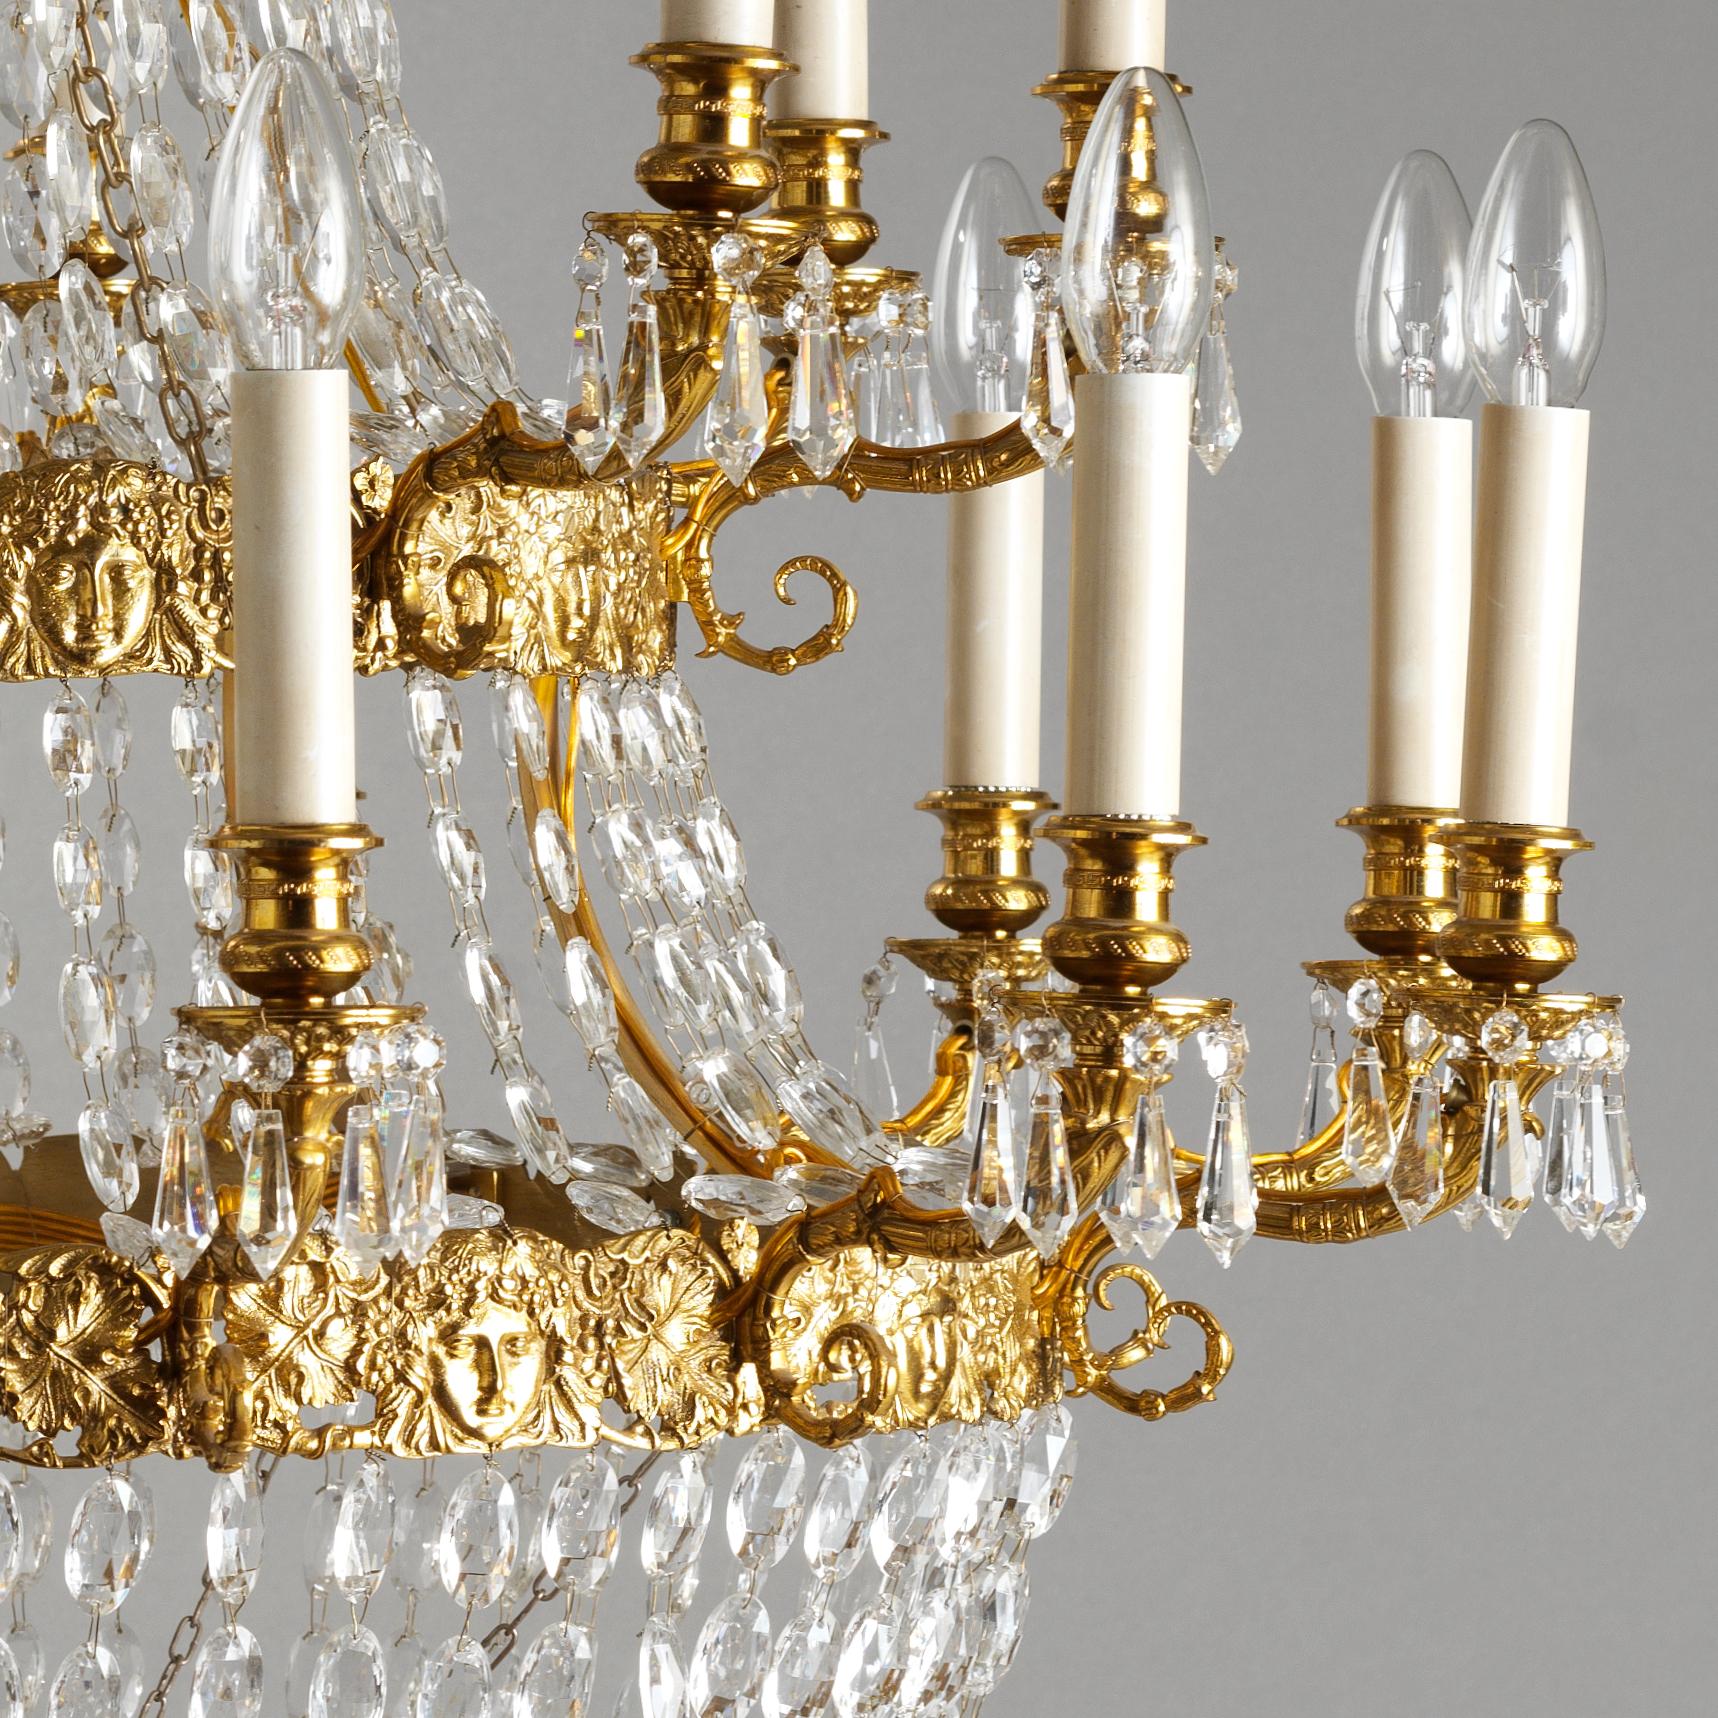 Dieser Kronleuchter im französischen Empire-Stil aus vergoldeter Bronze und Kristall von Gherardo Degli Albizzi hat zwanzig Lichter und zeichnet sich durch hochwertige handgefertigte Details aus.
Die Aufsatzkronen zeichnen sich durch eine reiche